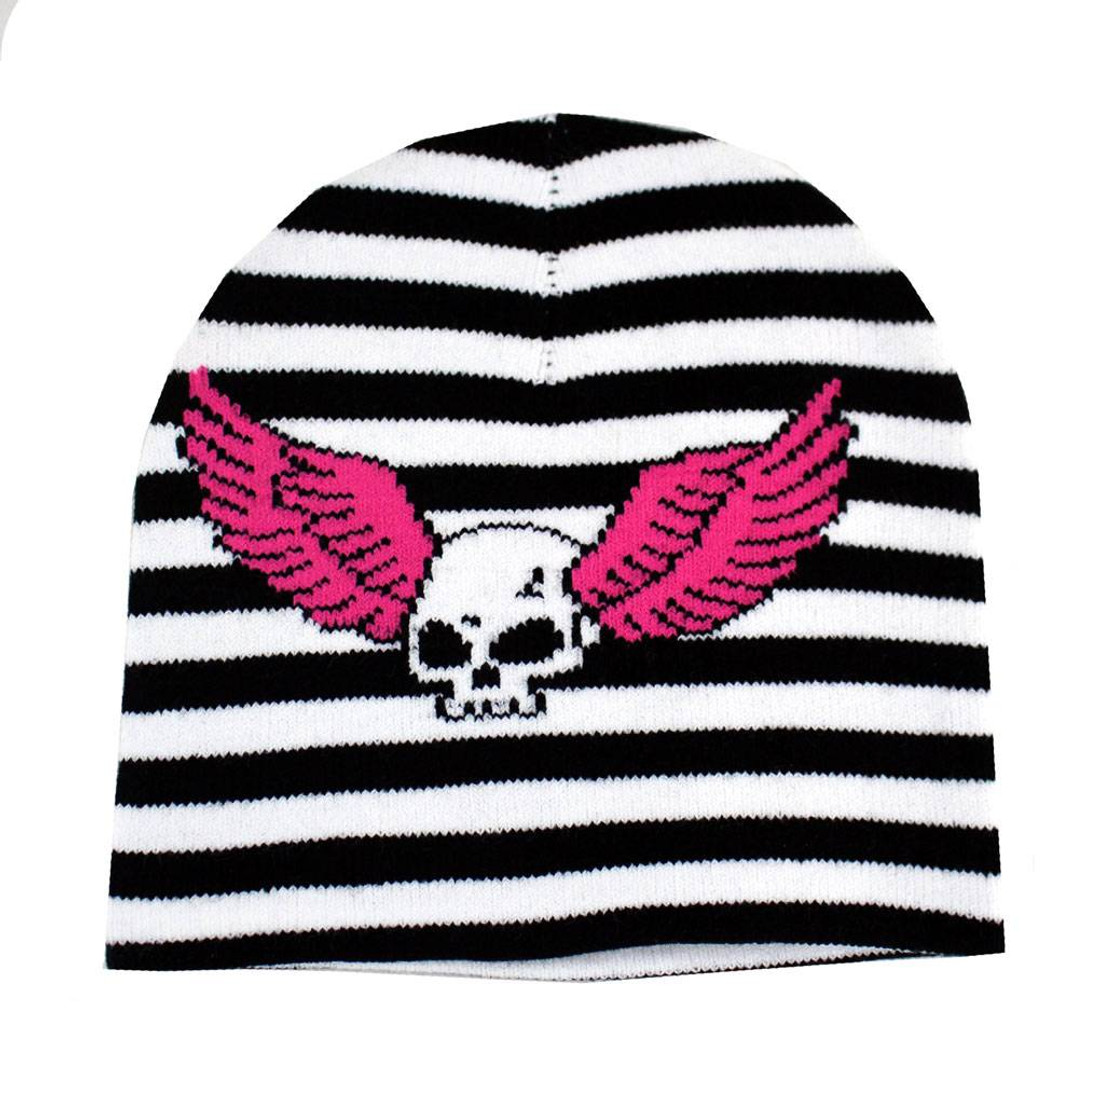 Skull Wings Black White Striped Beanie Knit Hat Punk Rock Snowboard Headgear